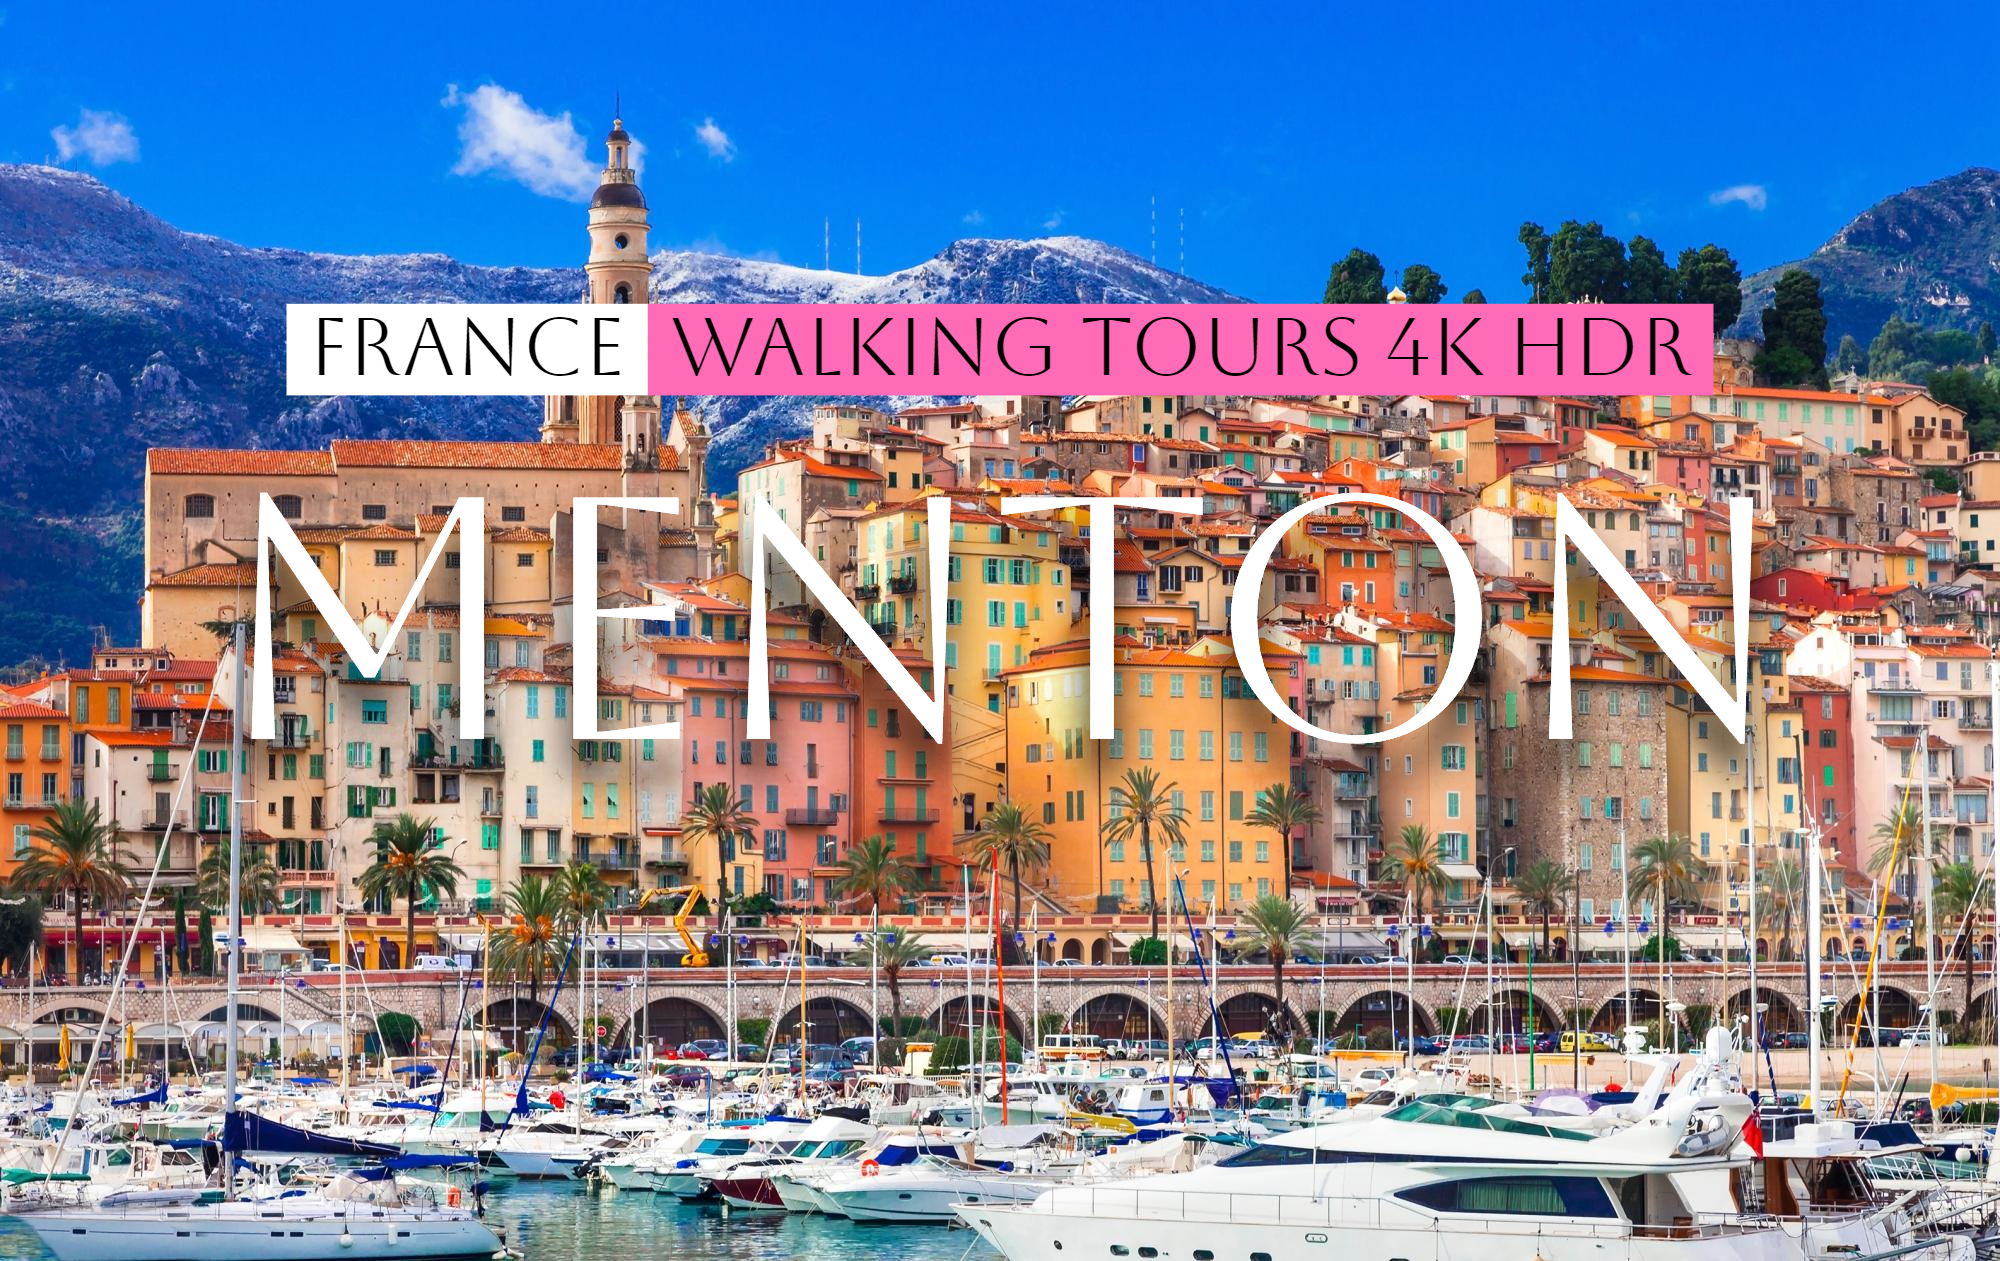 Ментона на Французской Ривьере - French Riviera, Menton, France Walking tour - Отдых во Франции